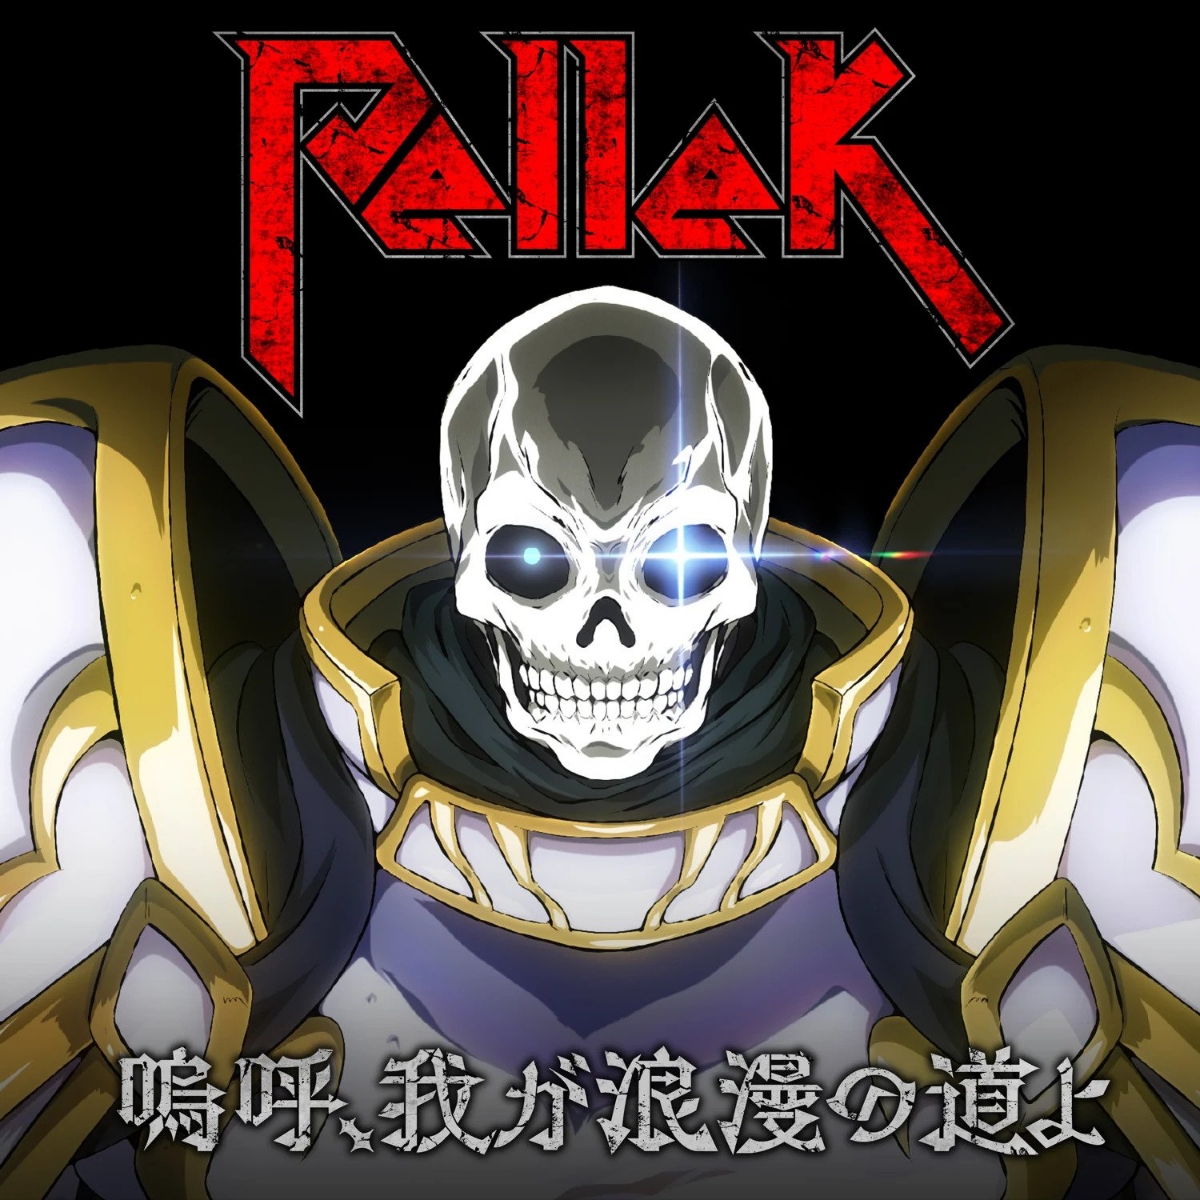 PelleK - Aa, Waga Rouman no Michi yo